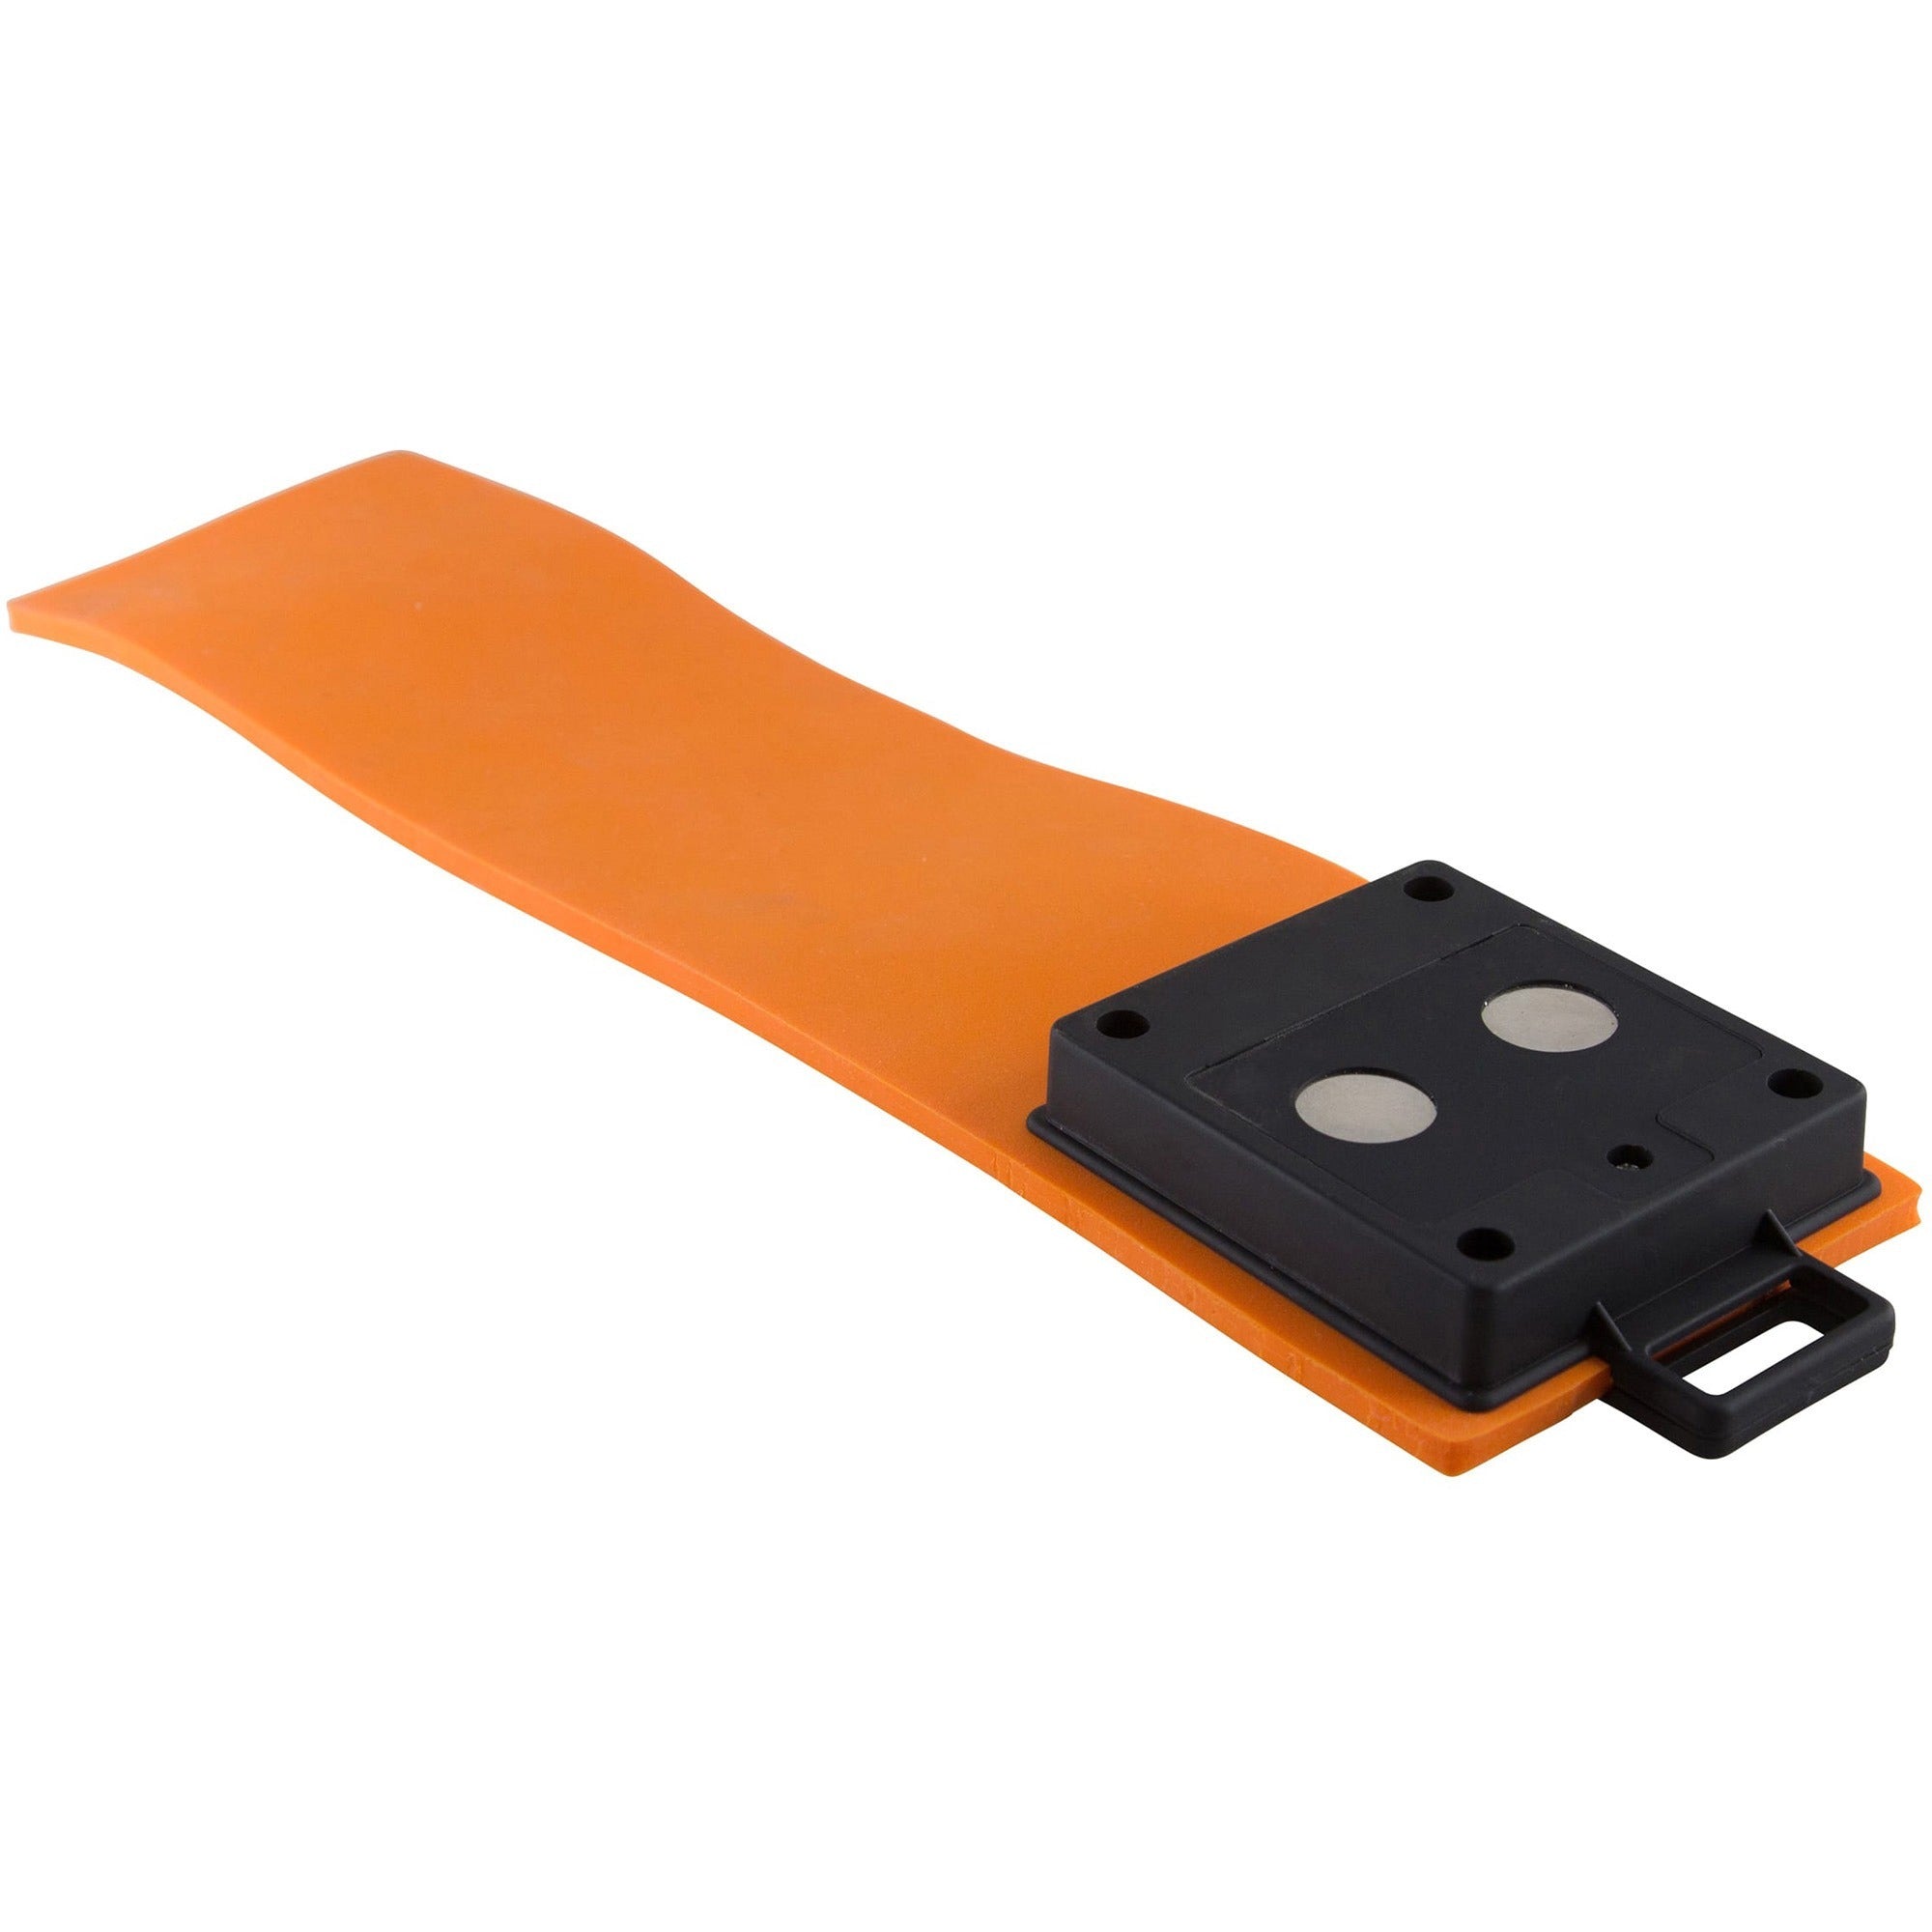 baumgartens-silicone-led-flashlight-30-x-ledaaa-battery-silicone-water-resistant-orange-black_bau42670 - 2